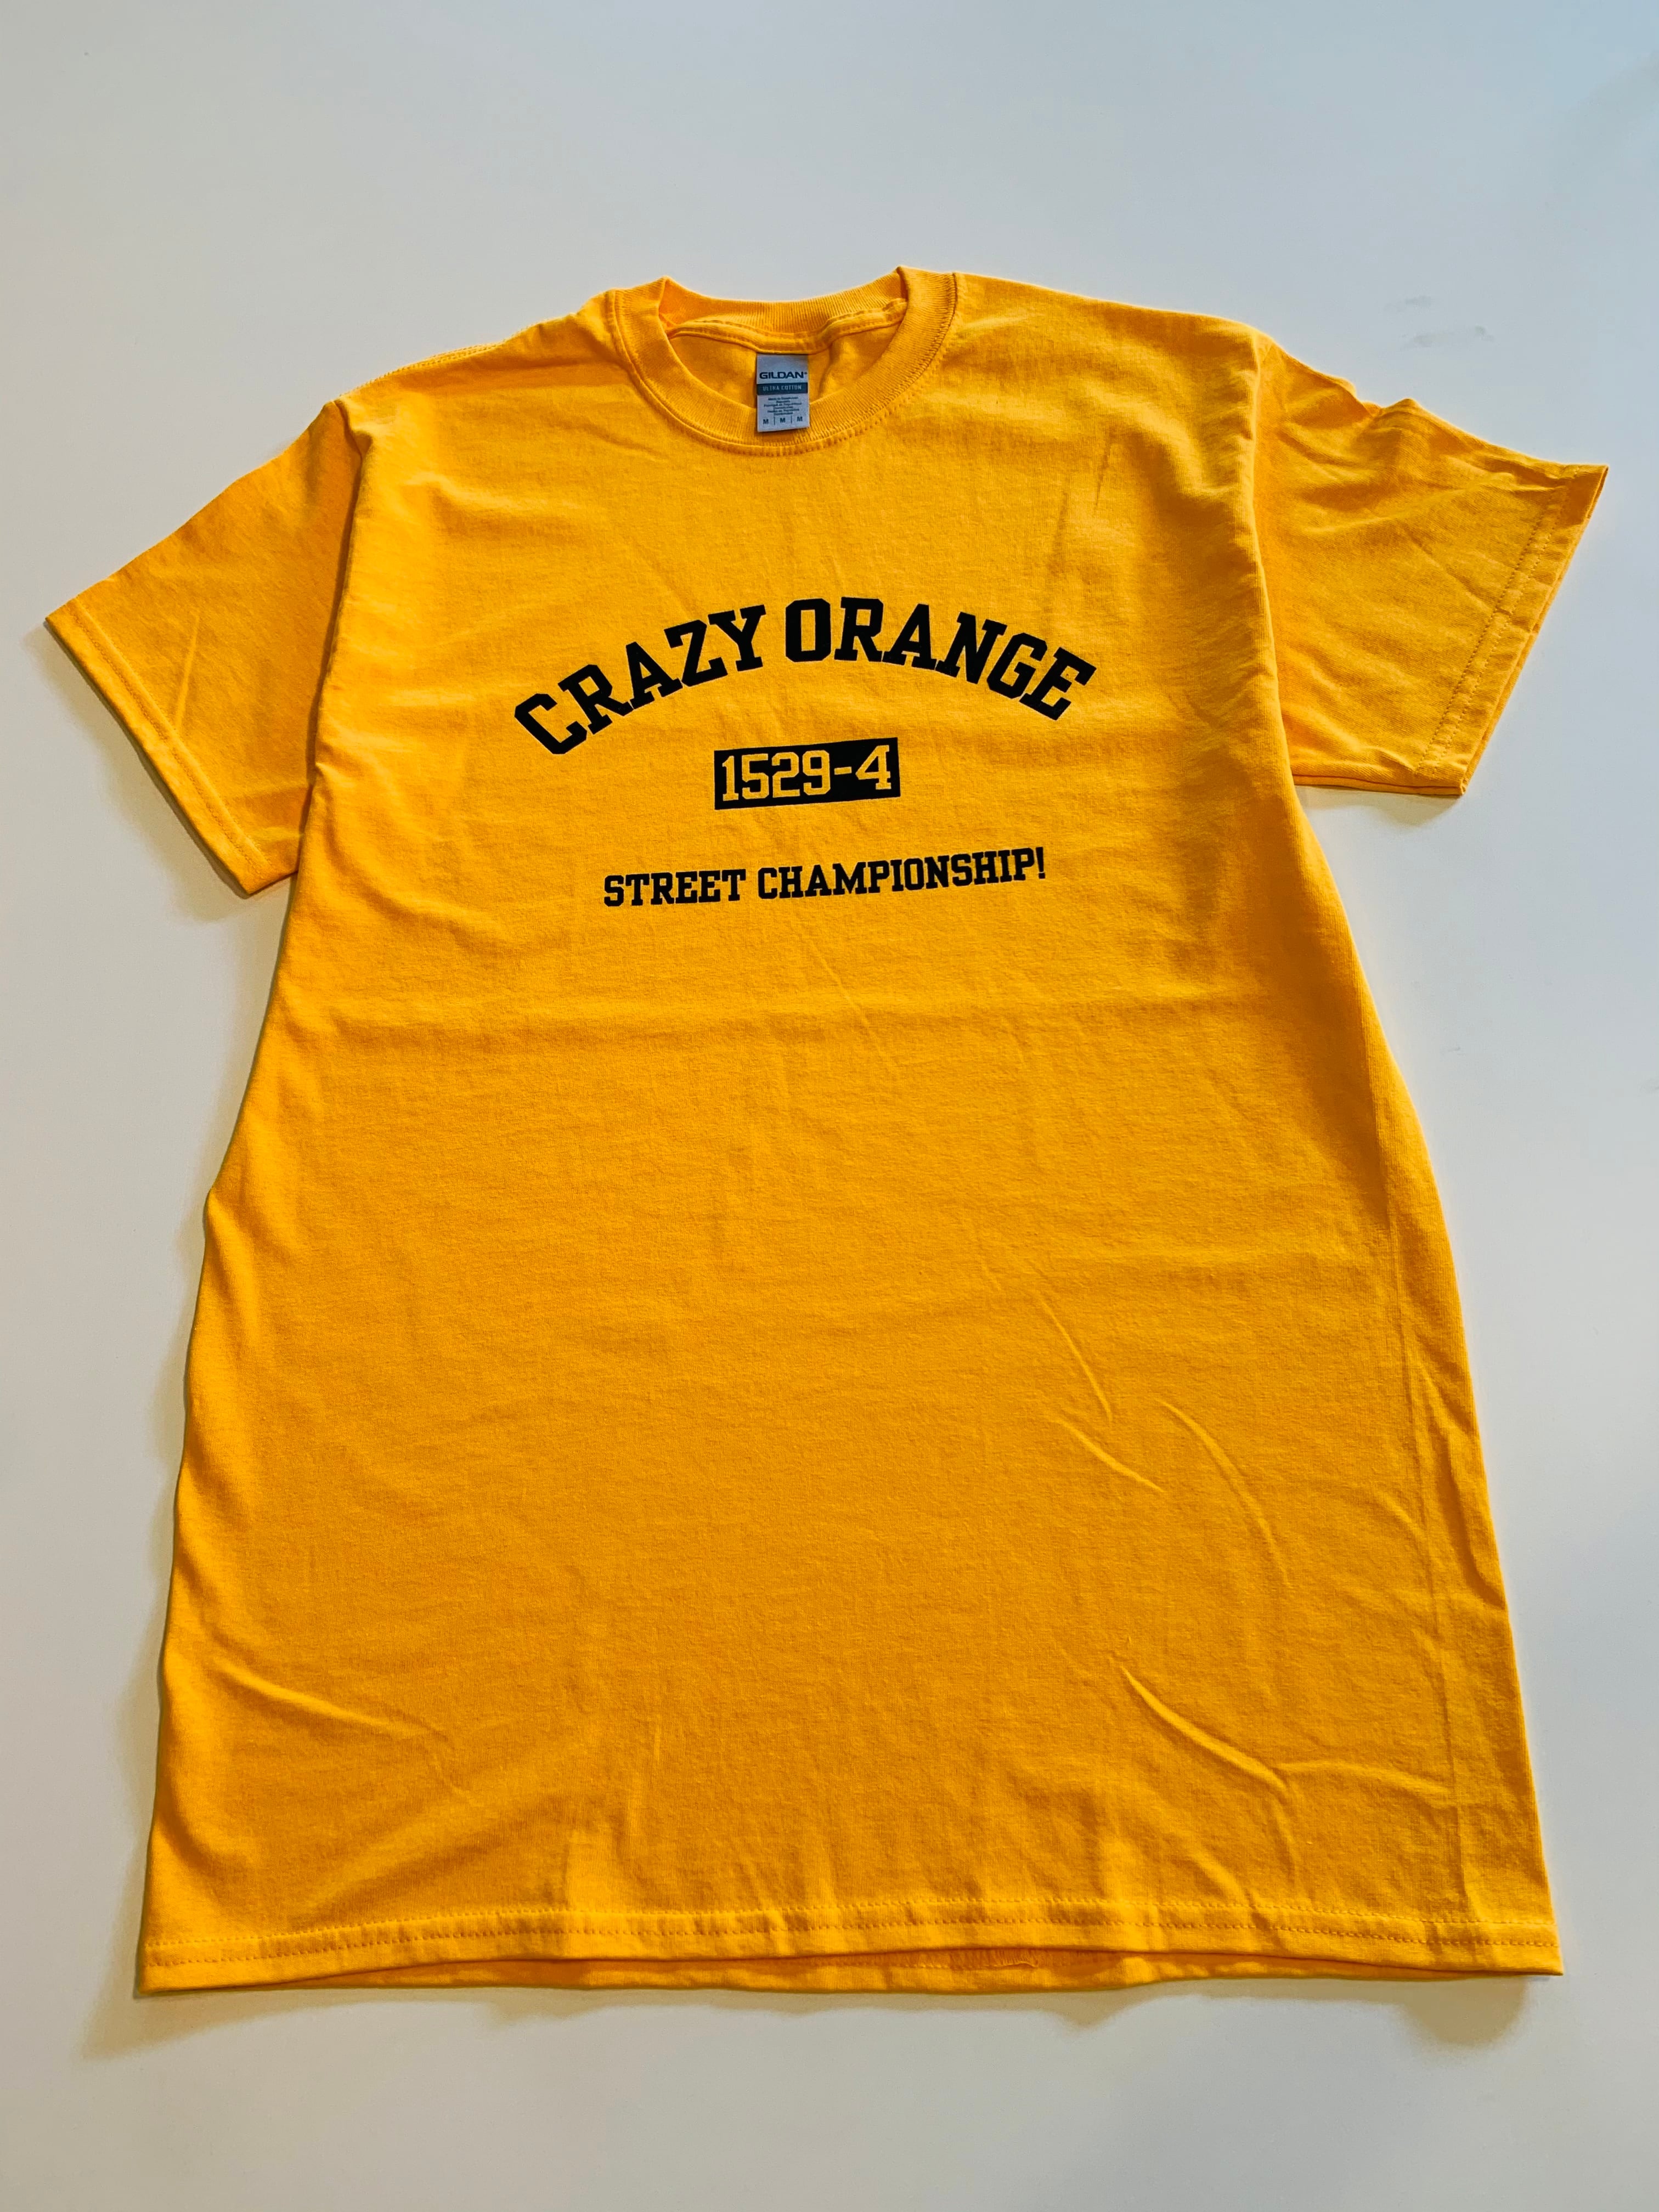 030)クレイジーオレンジ カレッジTシャツ ゴールドイエロー | CRAZYORANGE